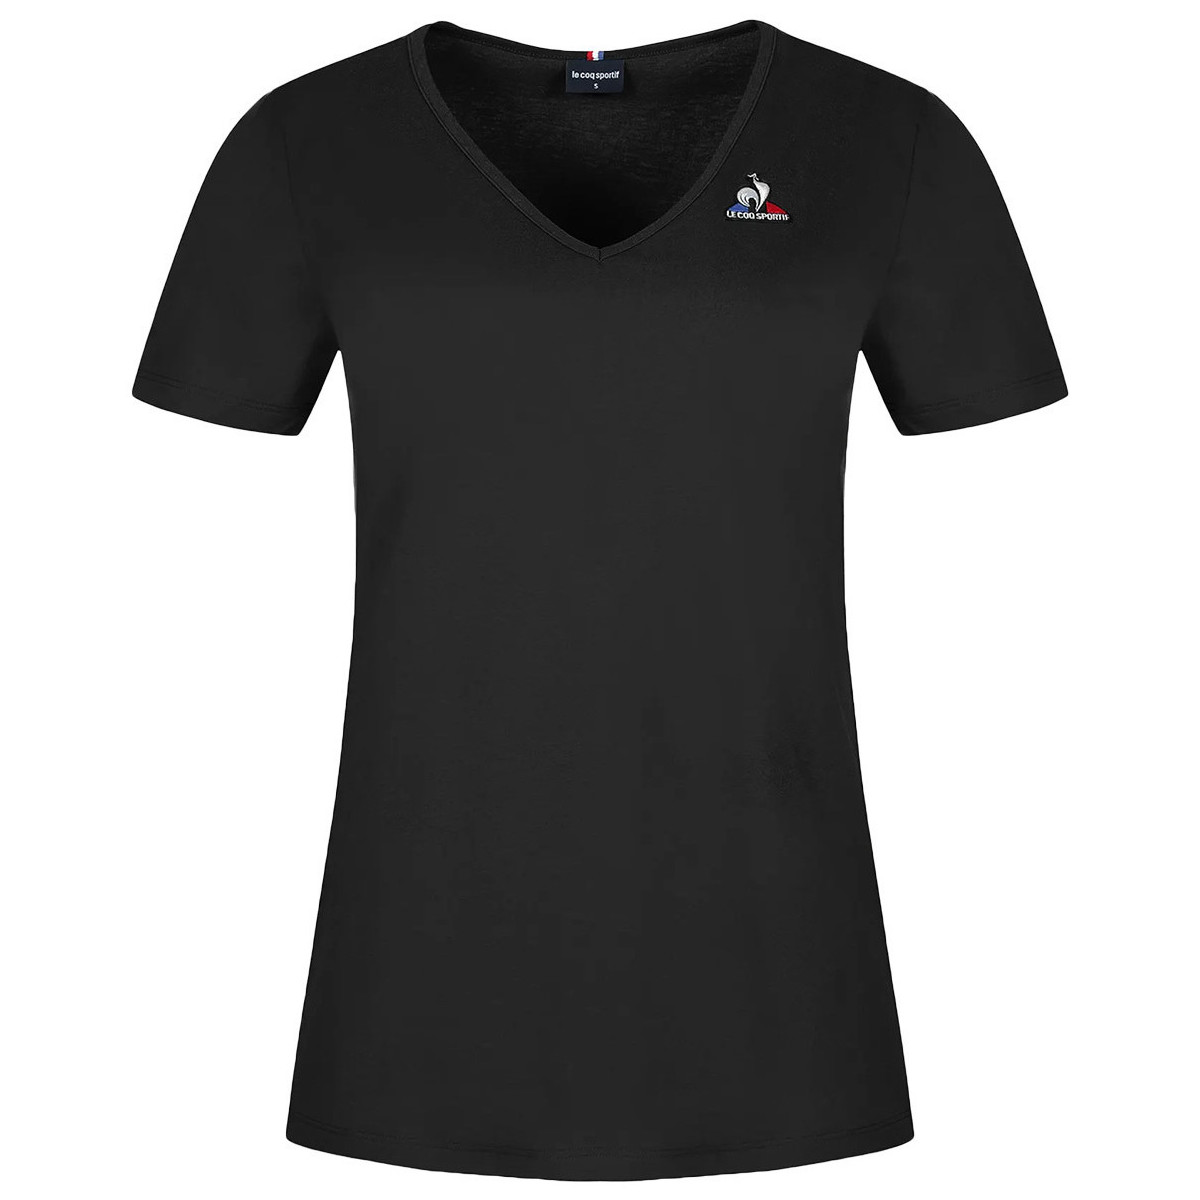 Textiel Dames T-shirts korte mouwen Le Coq Sportif Essentiels Tee N°1 Wn's Zwart